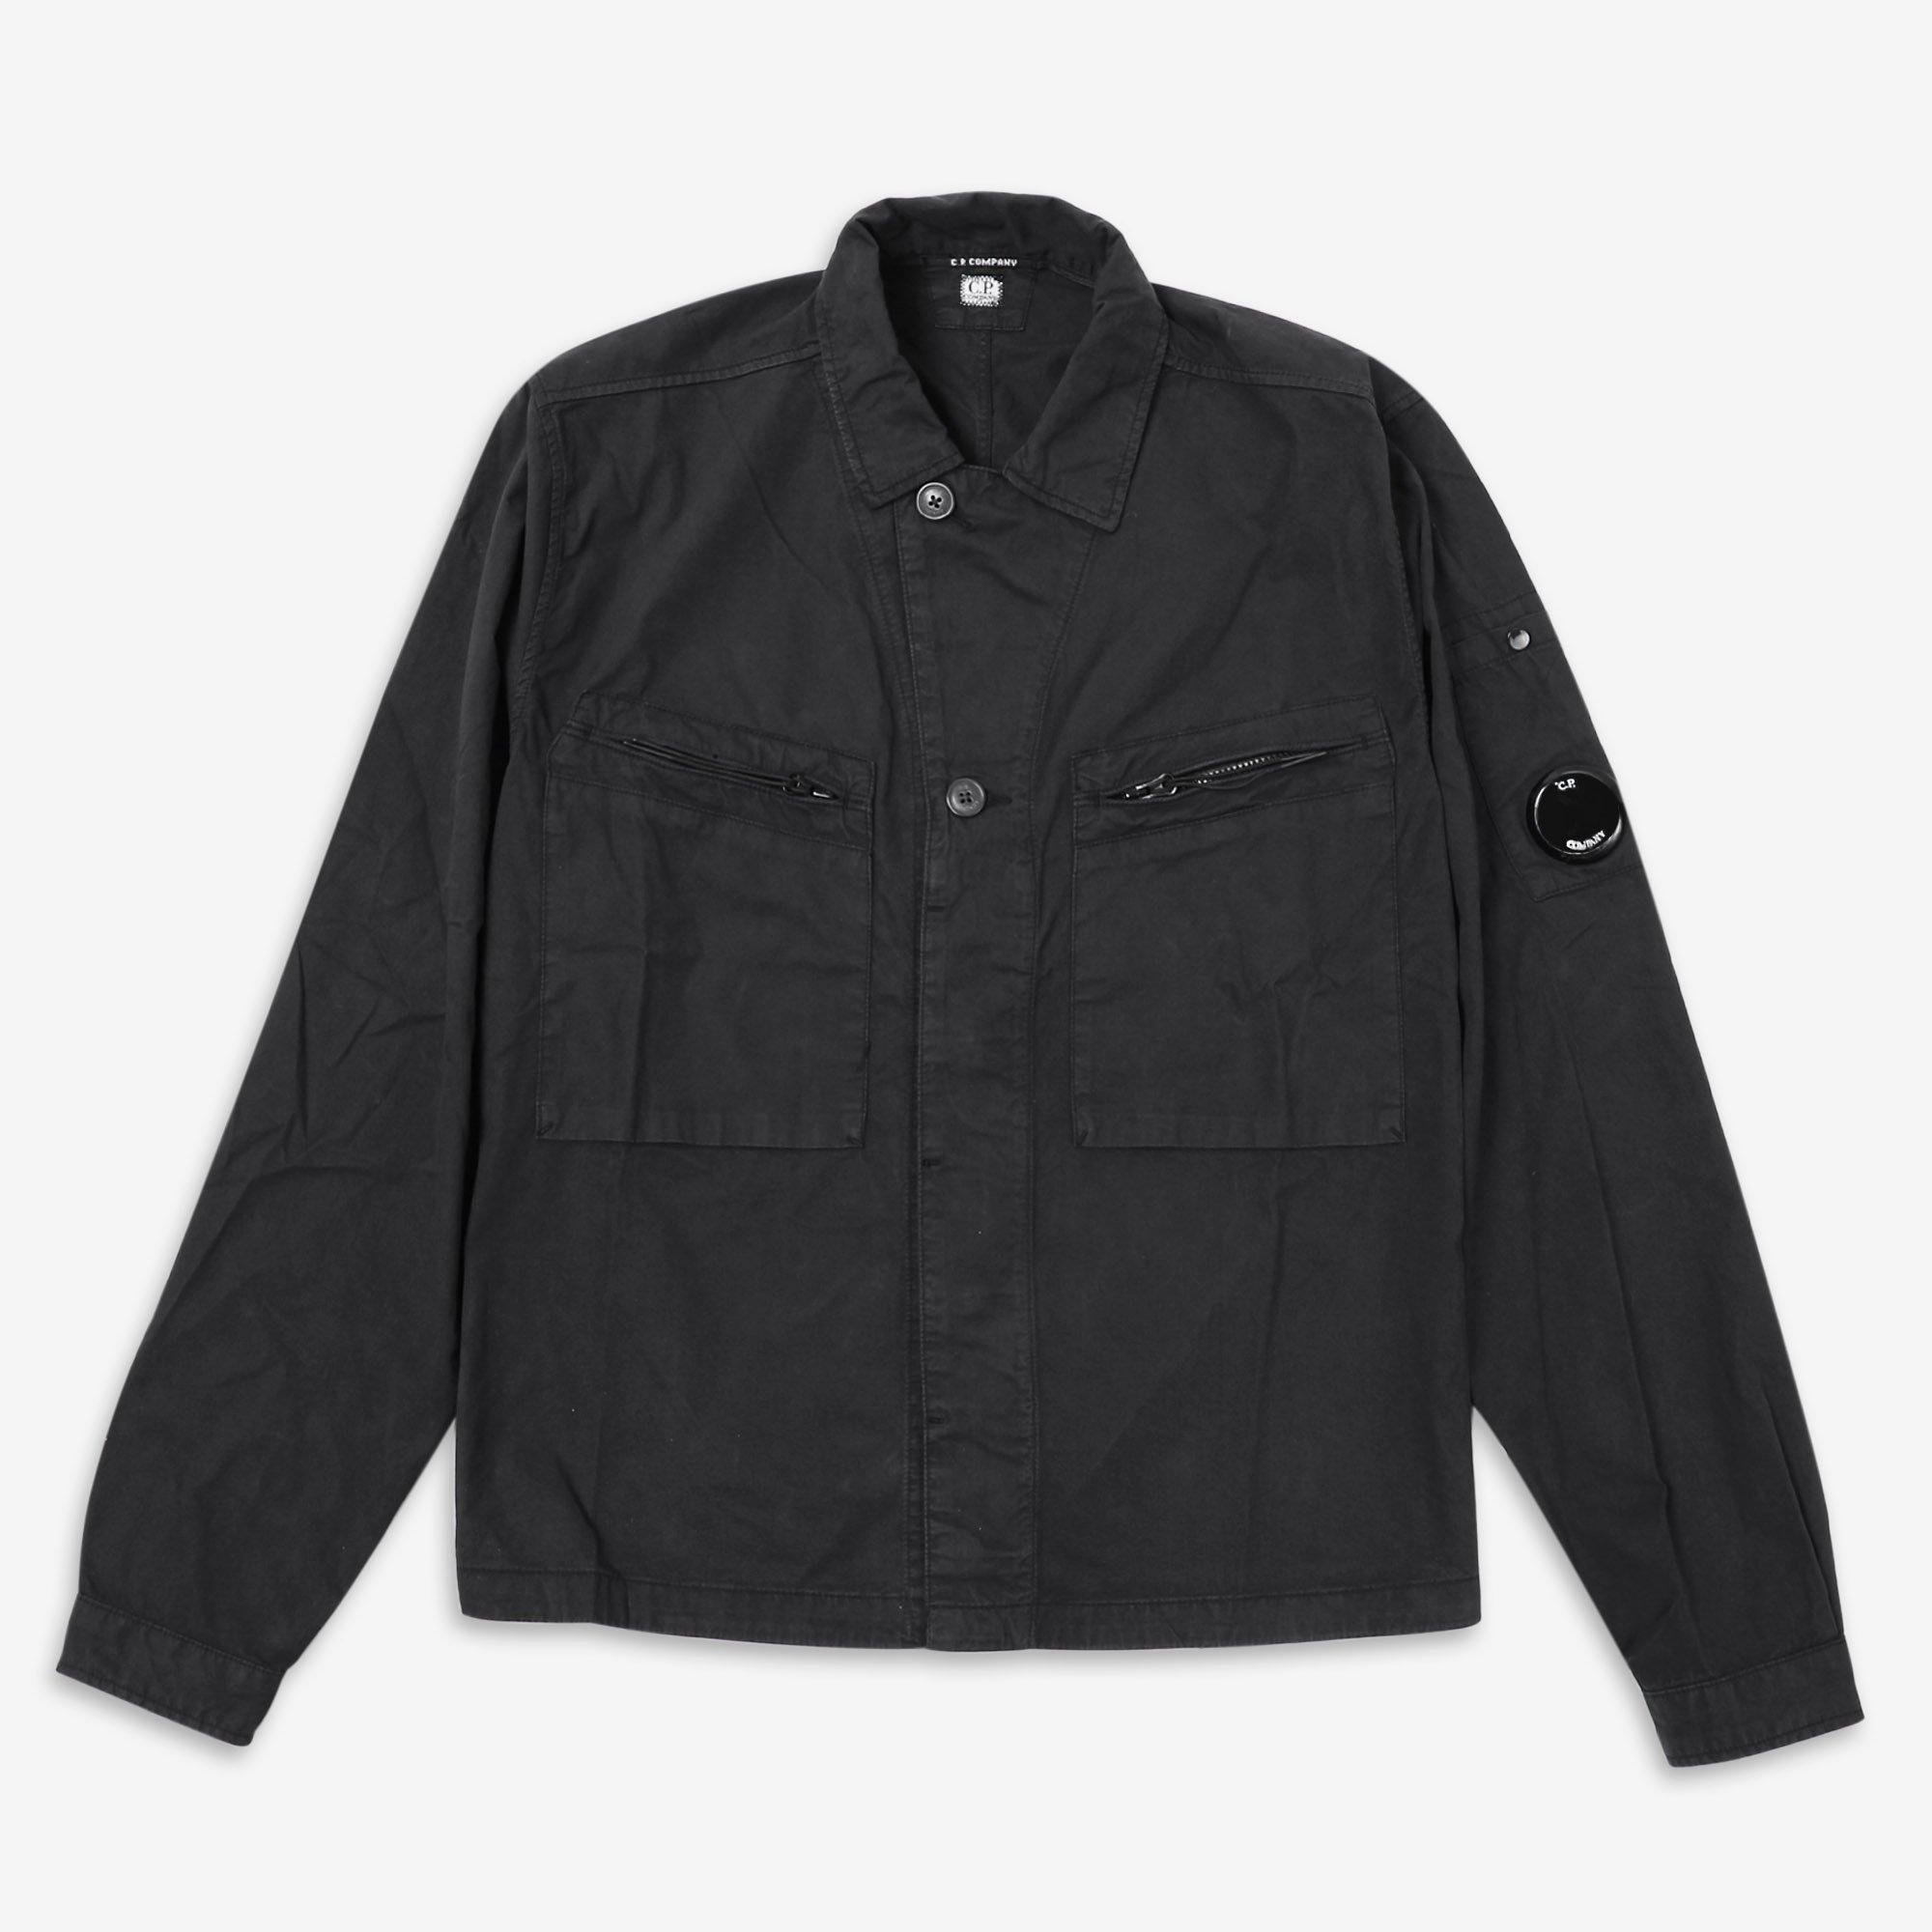 CP Company | LS GbrdinUtiShirt Sn32 | Plain Shirt - Long Sleeve ...